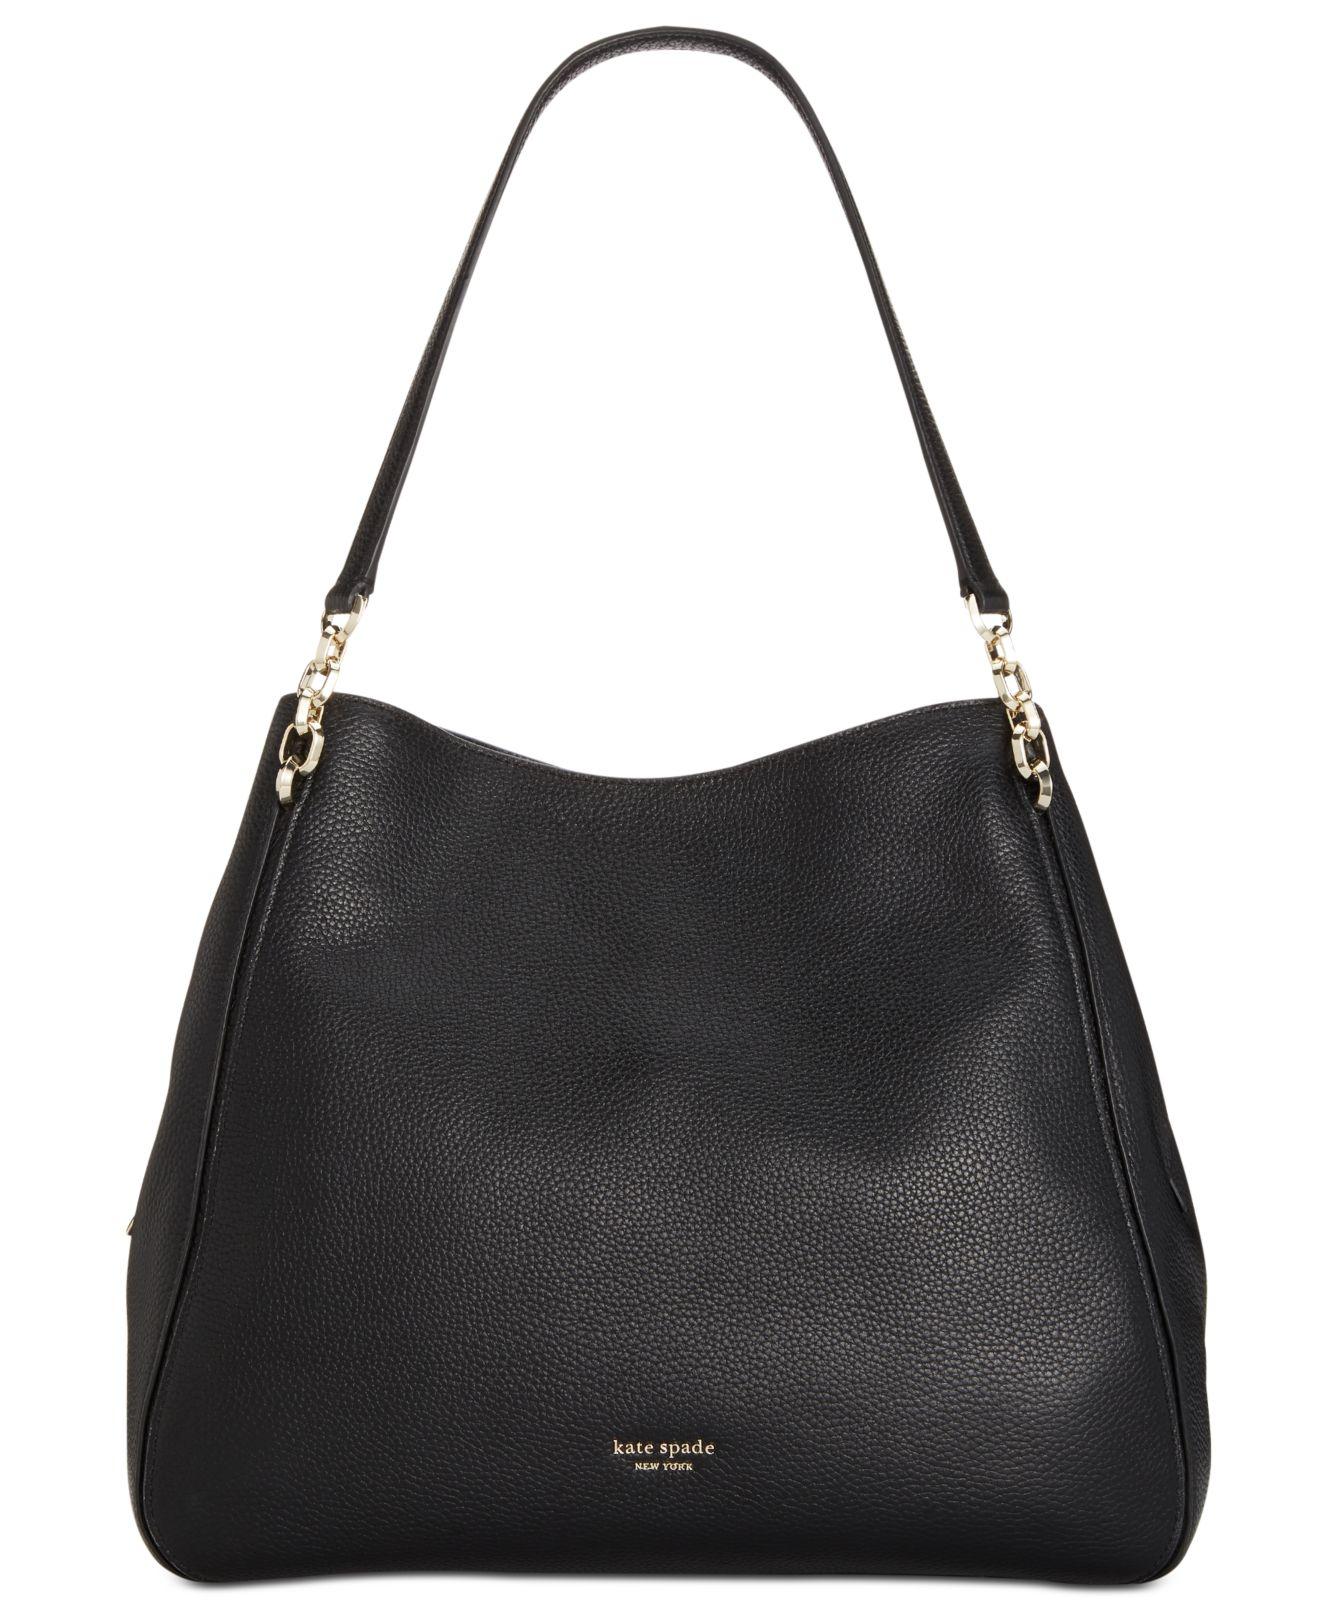 Kate Spade Hailey Large Leather Shoulder Bag in Black/Gold (Black) - Lyst